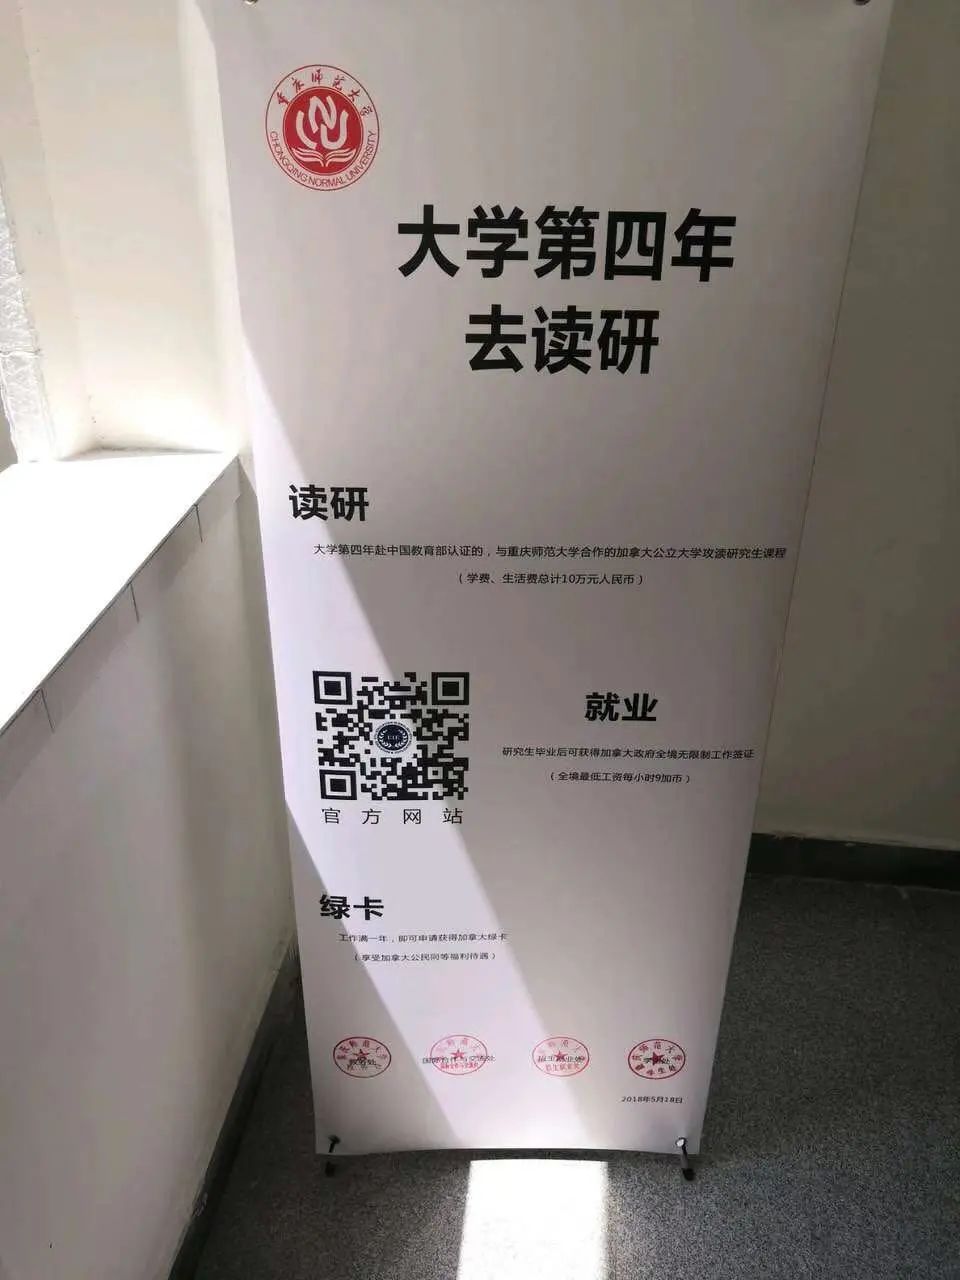 ▲曾摆放在重庆师范大学校内的“3+1”项目宣传易拉宝。受访者供图